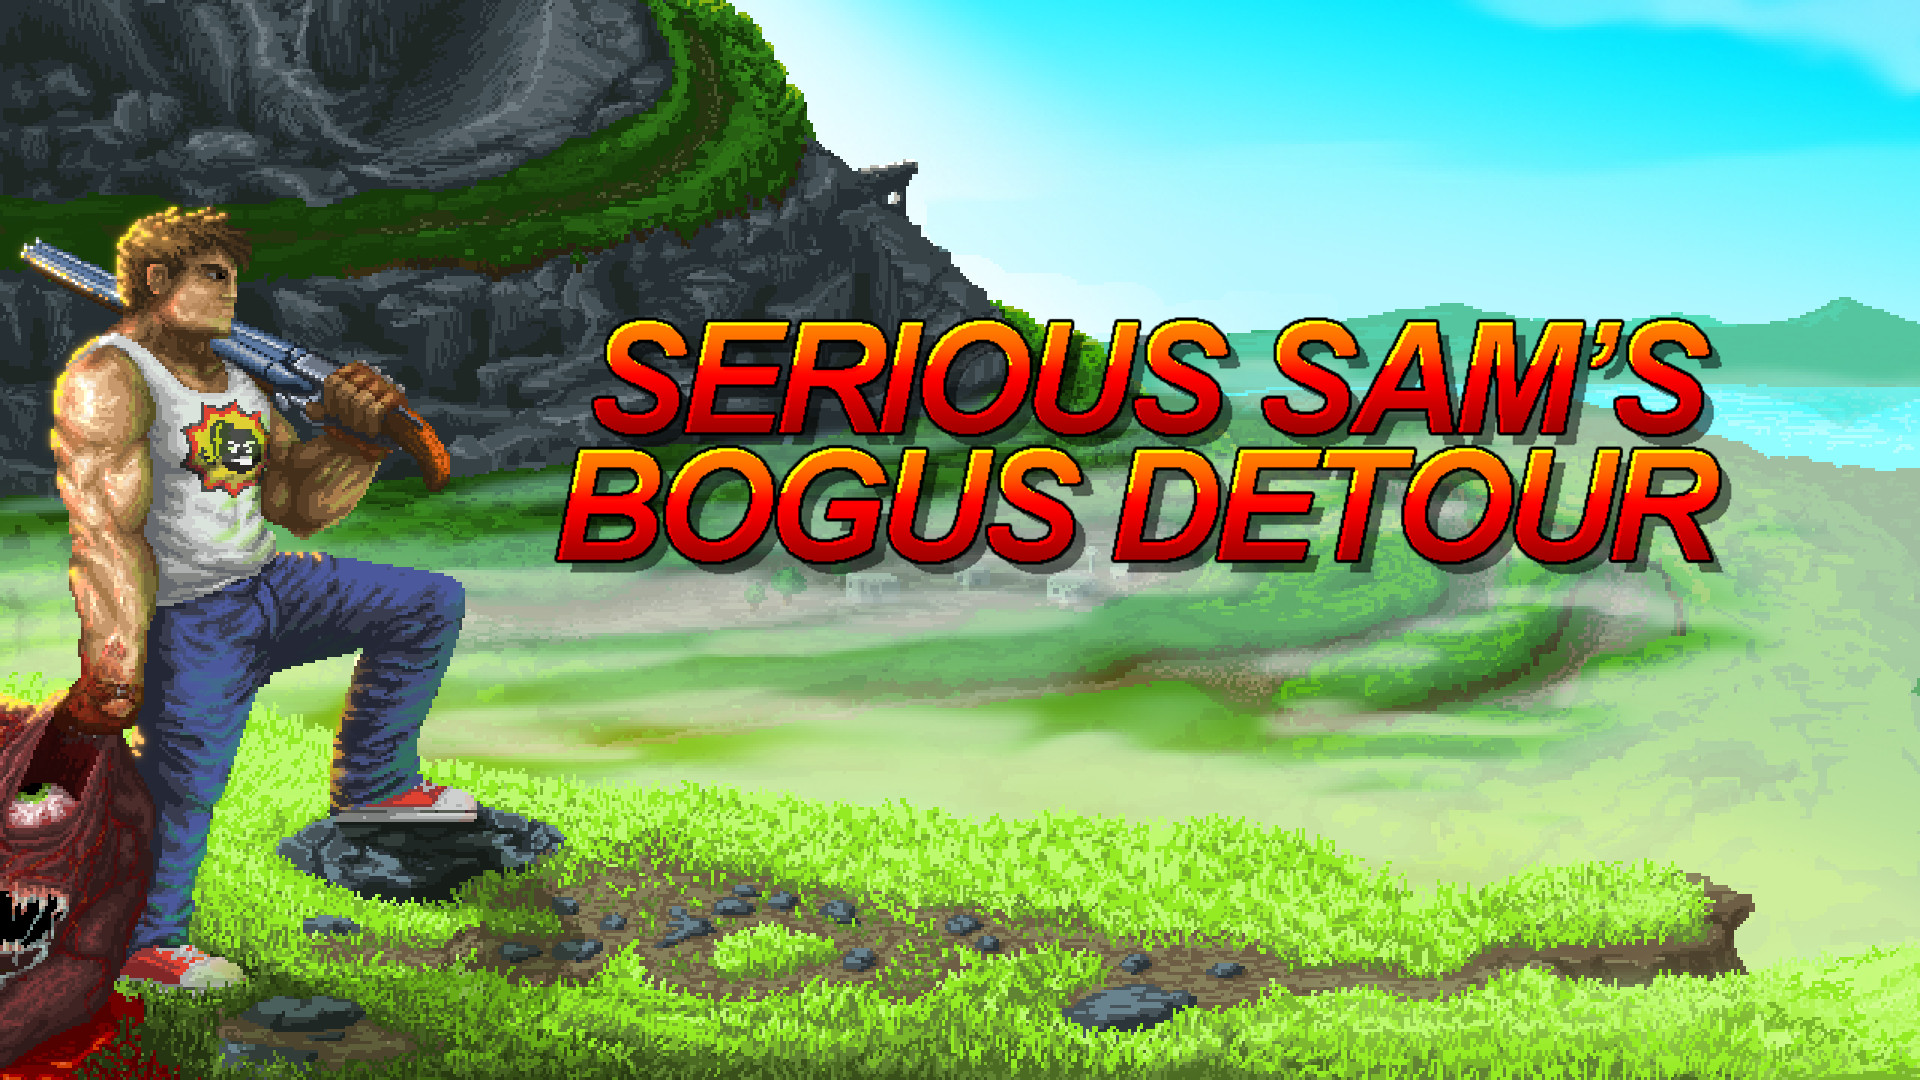 Serious Sam's Bogus Detour